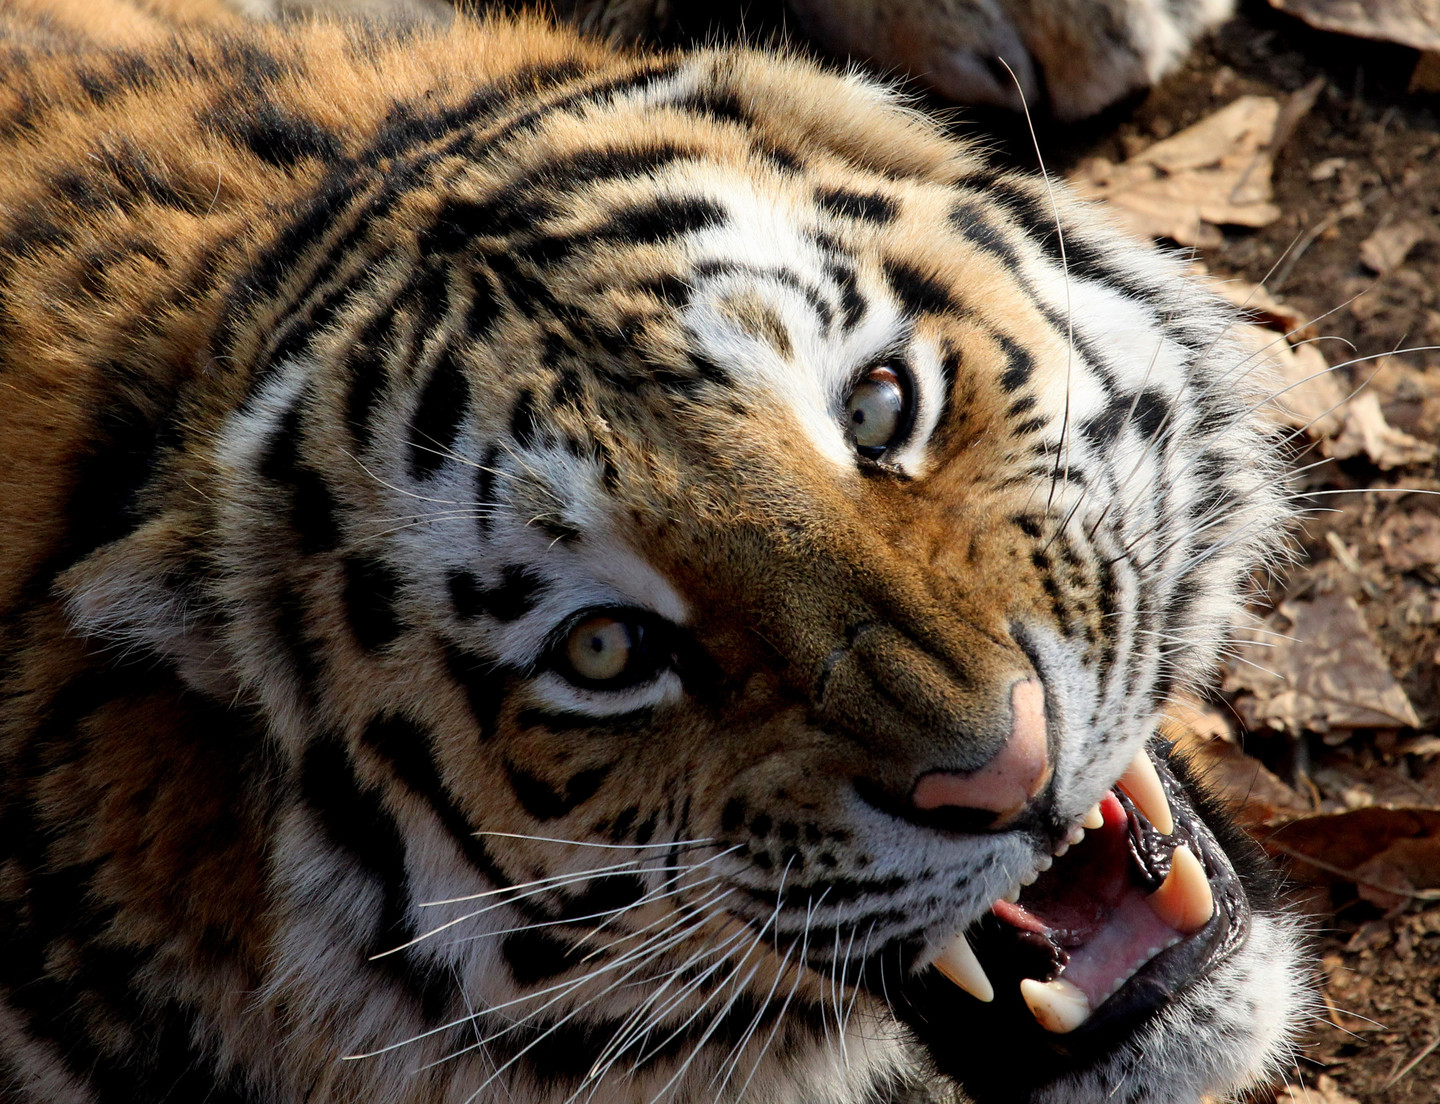  Тигр убил женщину в китайском сафари-парке - фото 1